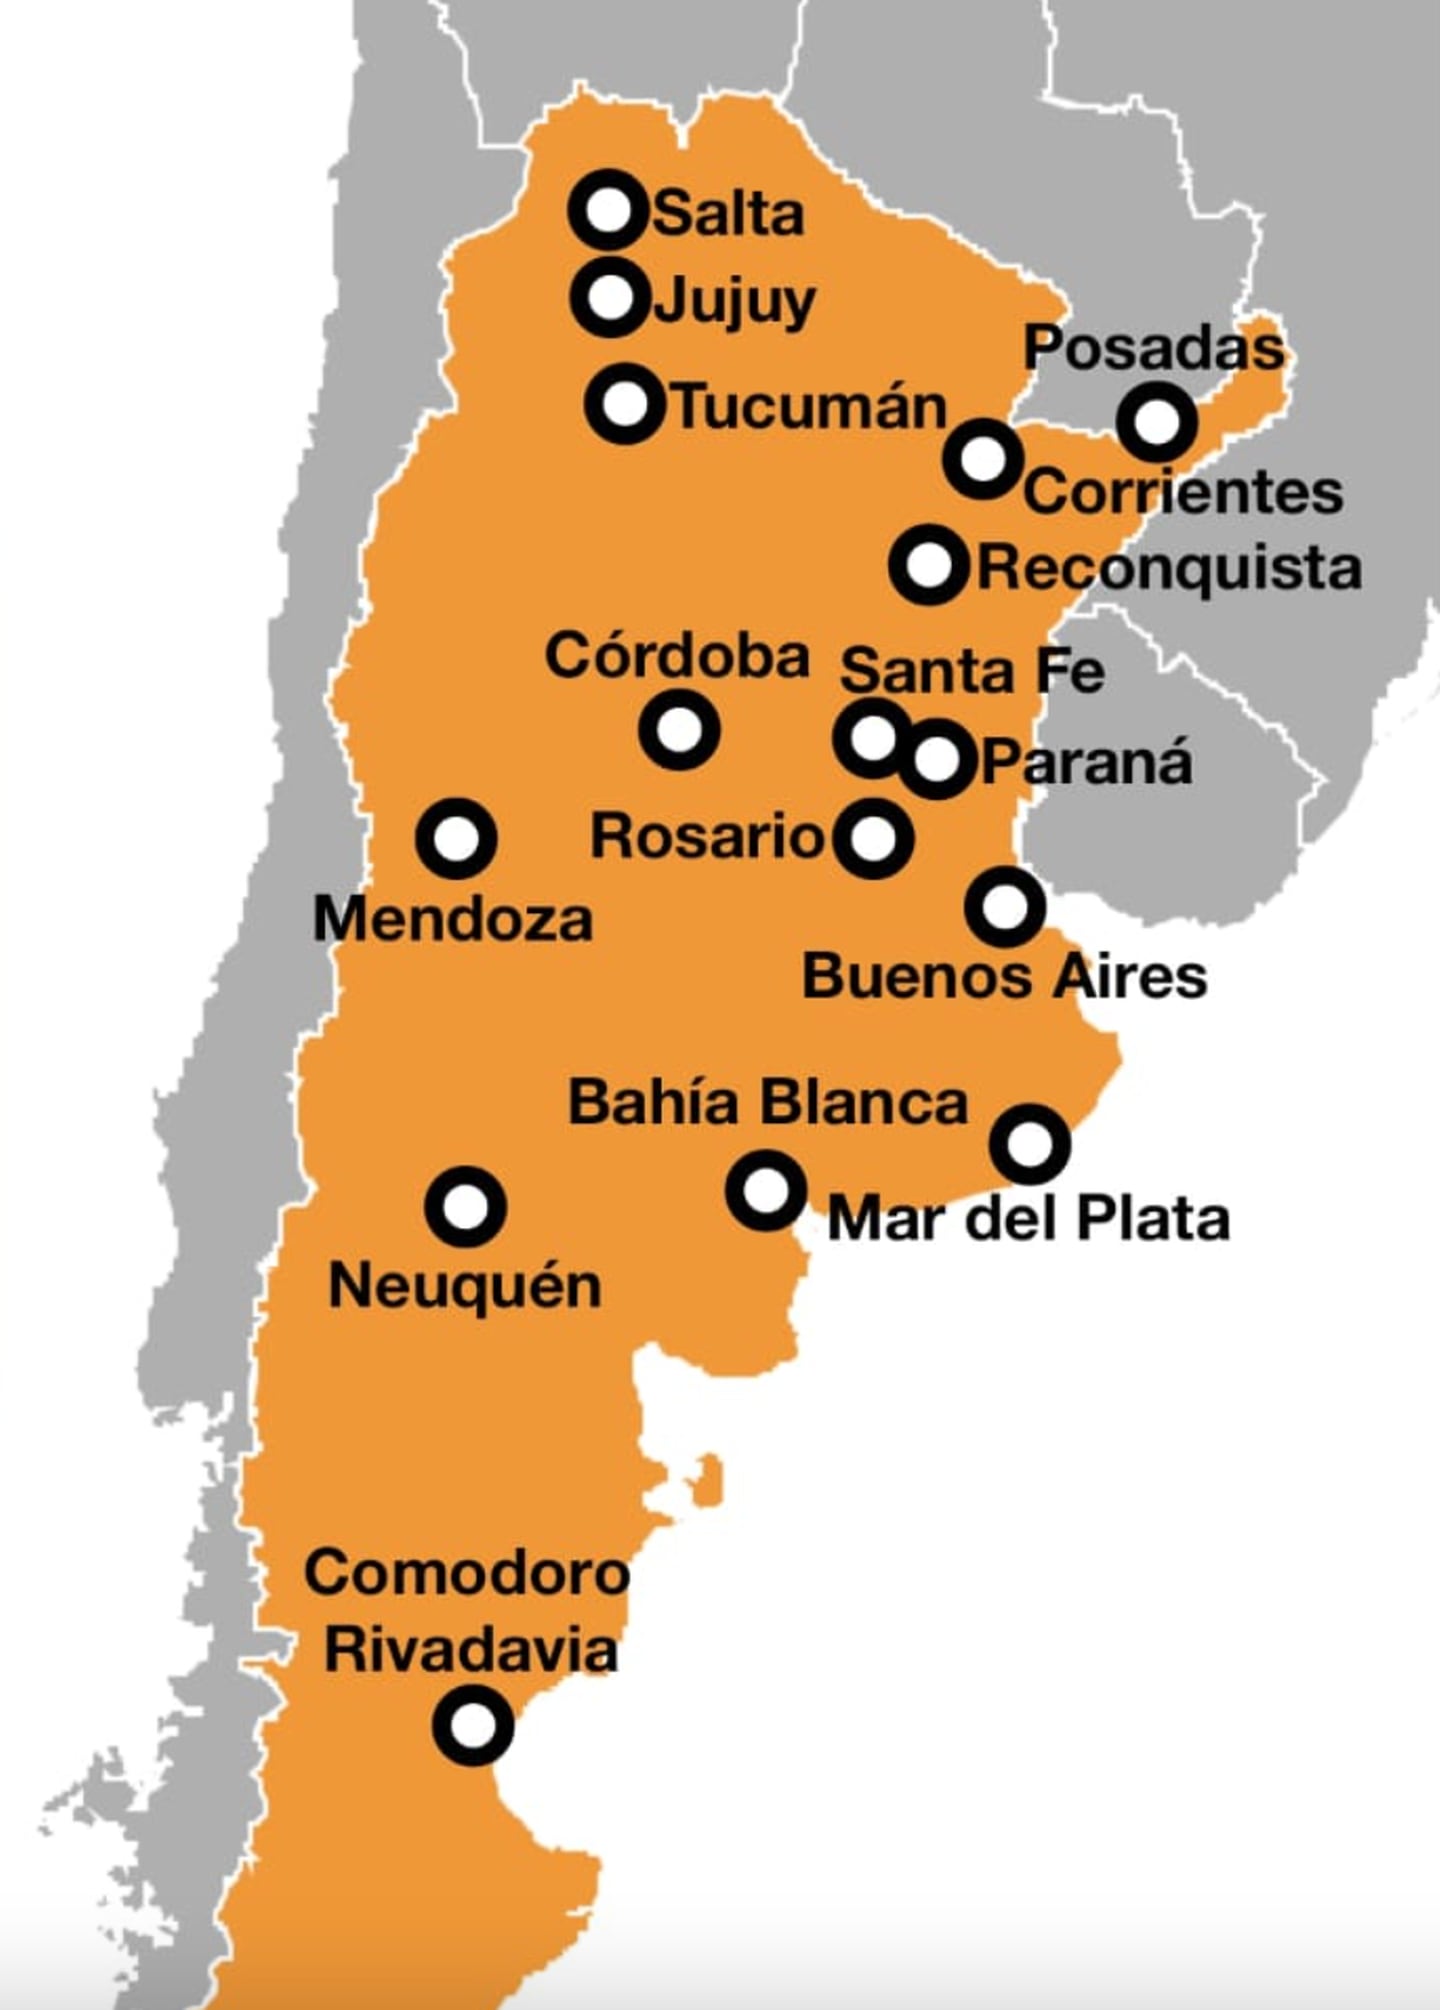 La aplicación se encuentra disponible en 13 ciudades argentinas.dfd